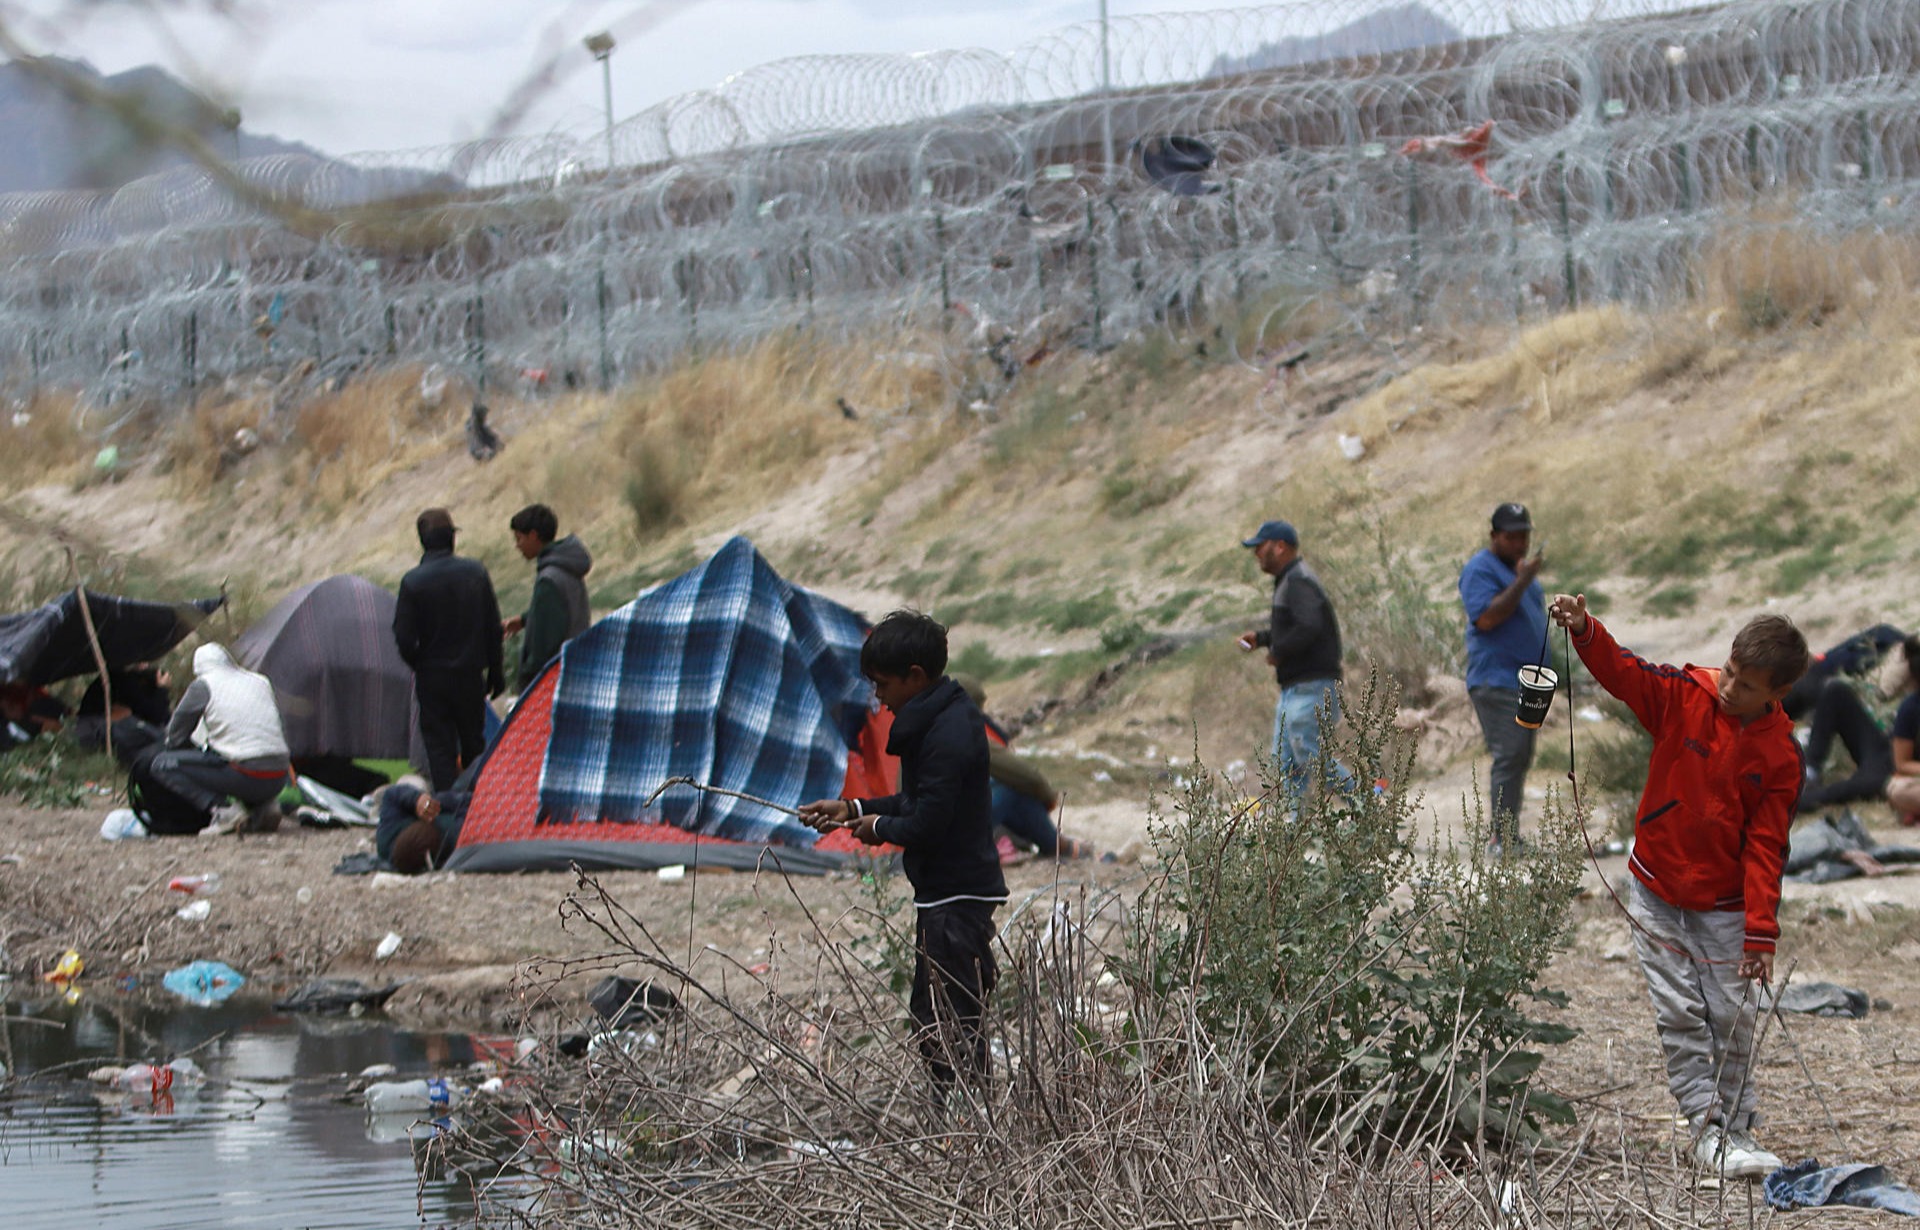 “Pasan frío, hambre, calor”: Las condiciones extremas enferman a decenas de niños migrantes que acampan en la frontera de México